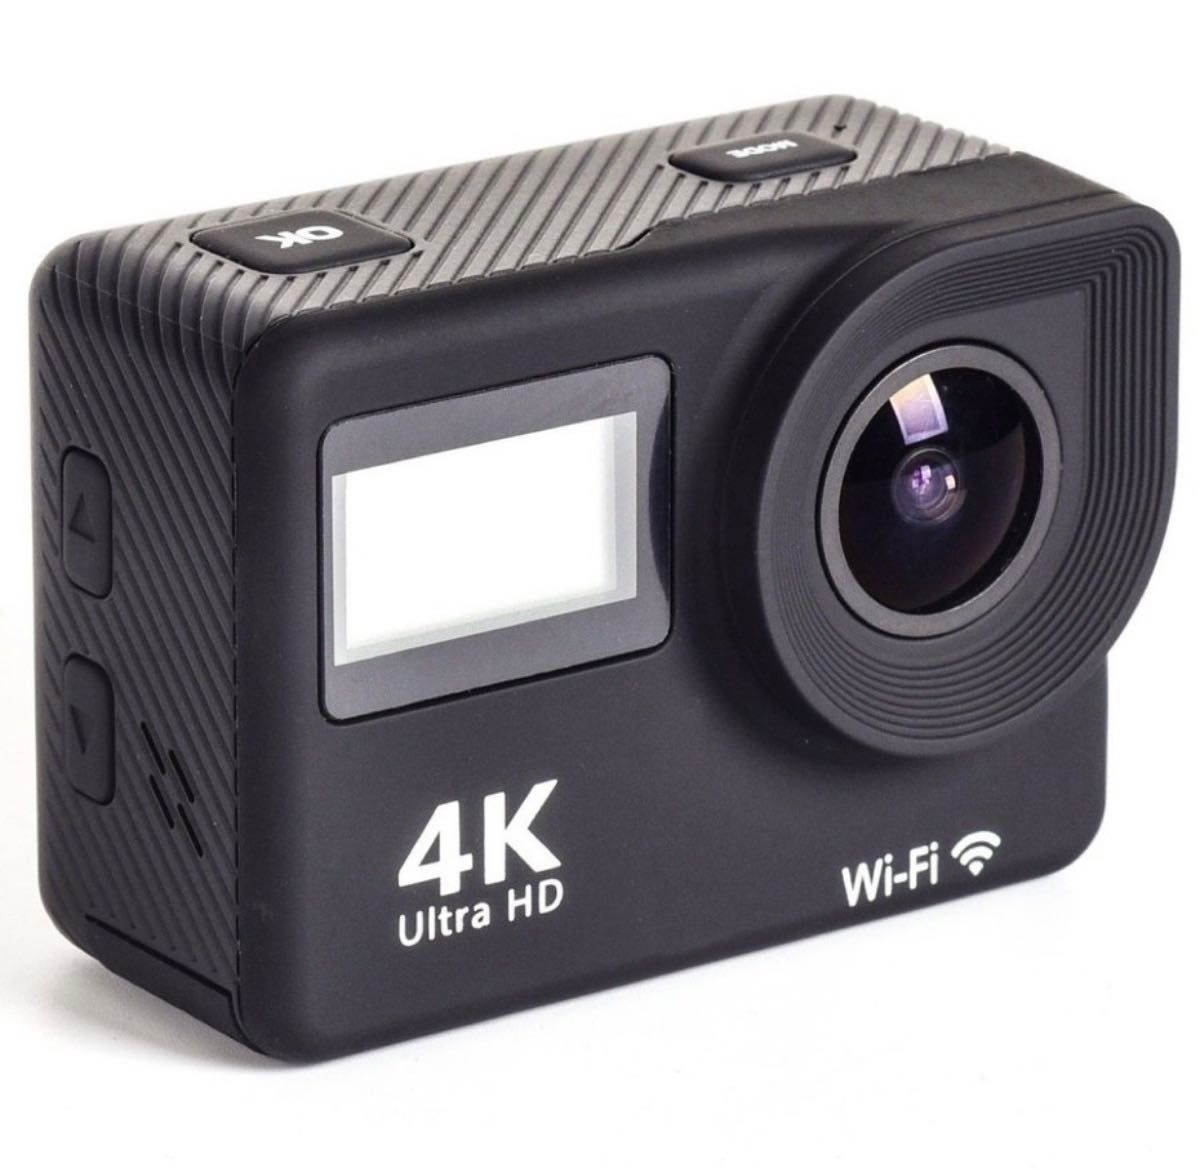 アクションカメラ 4K Wi-Fi  1200万画素高解像度 Android iPhone対応 多言語メニュースポーツ カメラ 